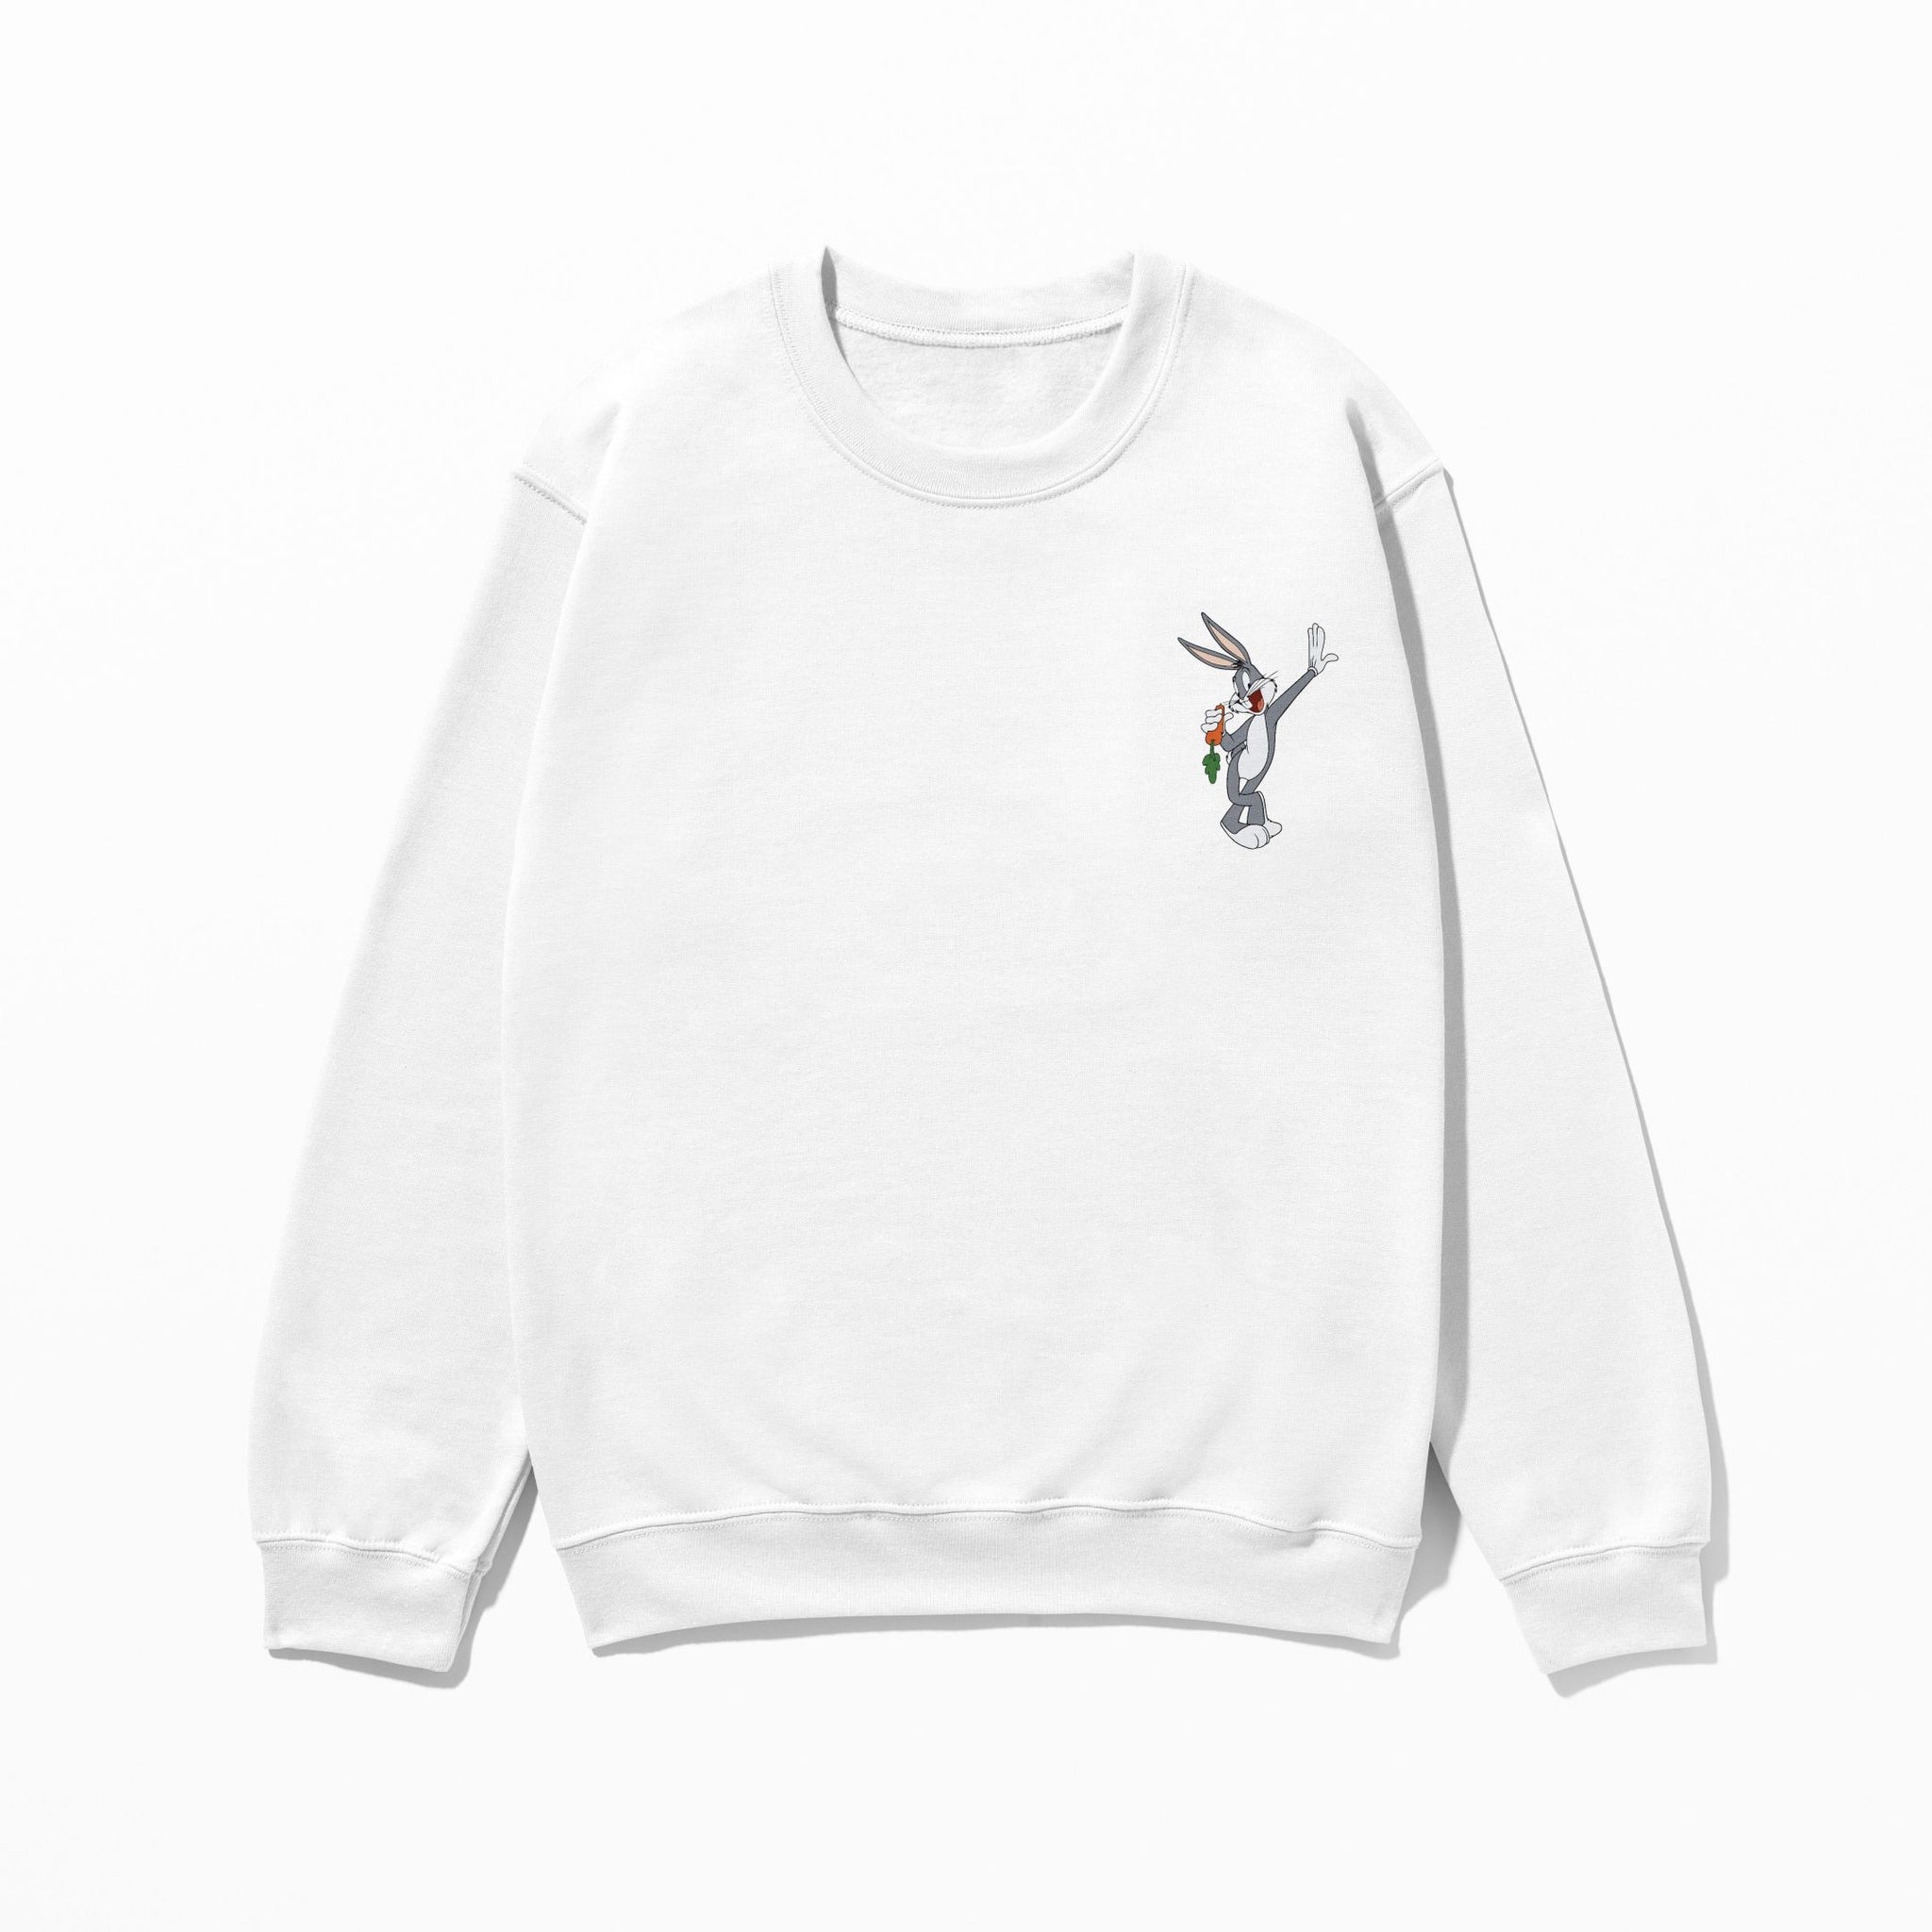 Bugs Bunny - Sweatshirt